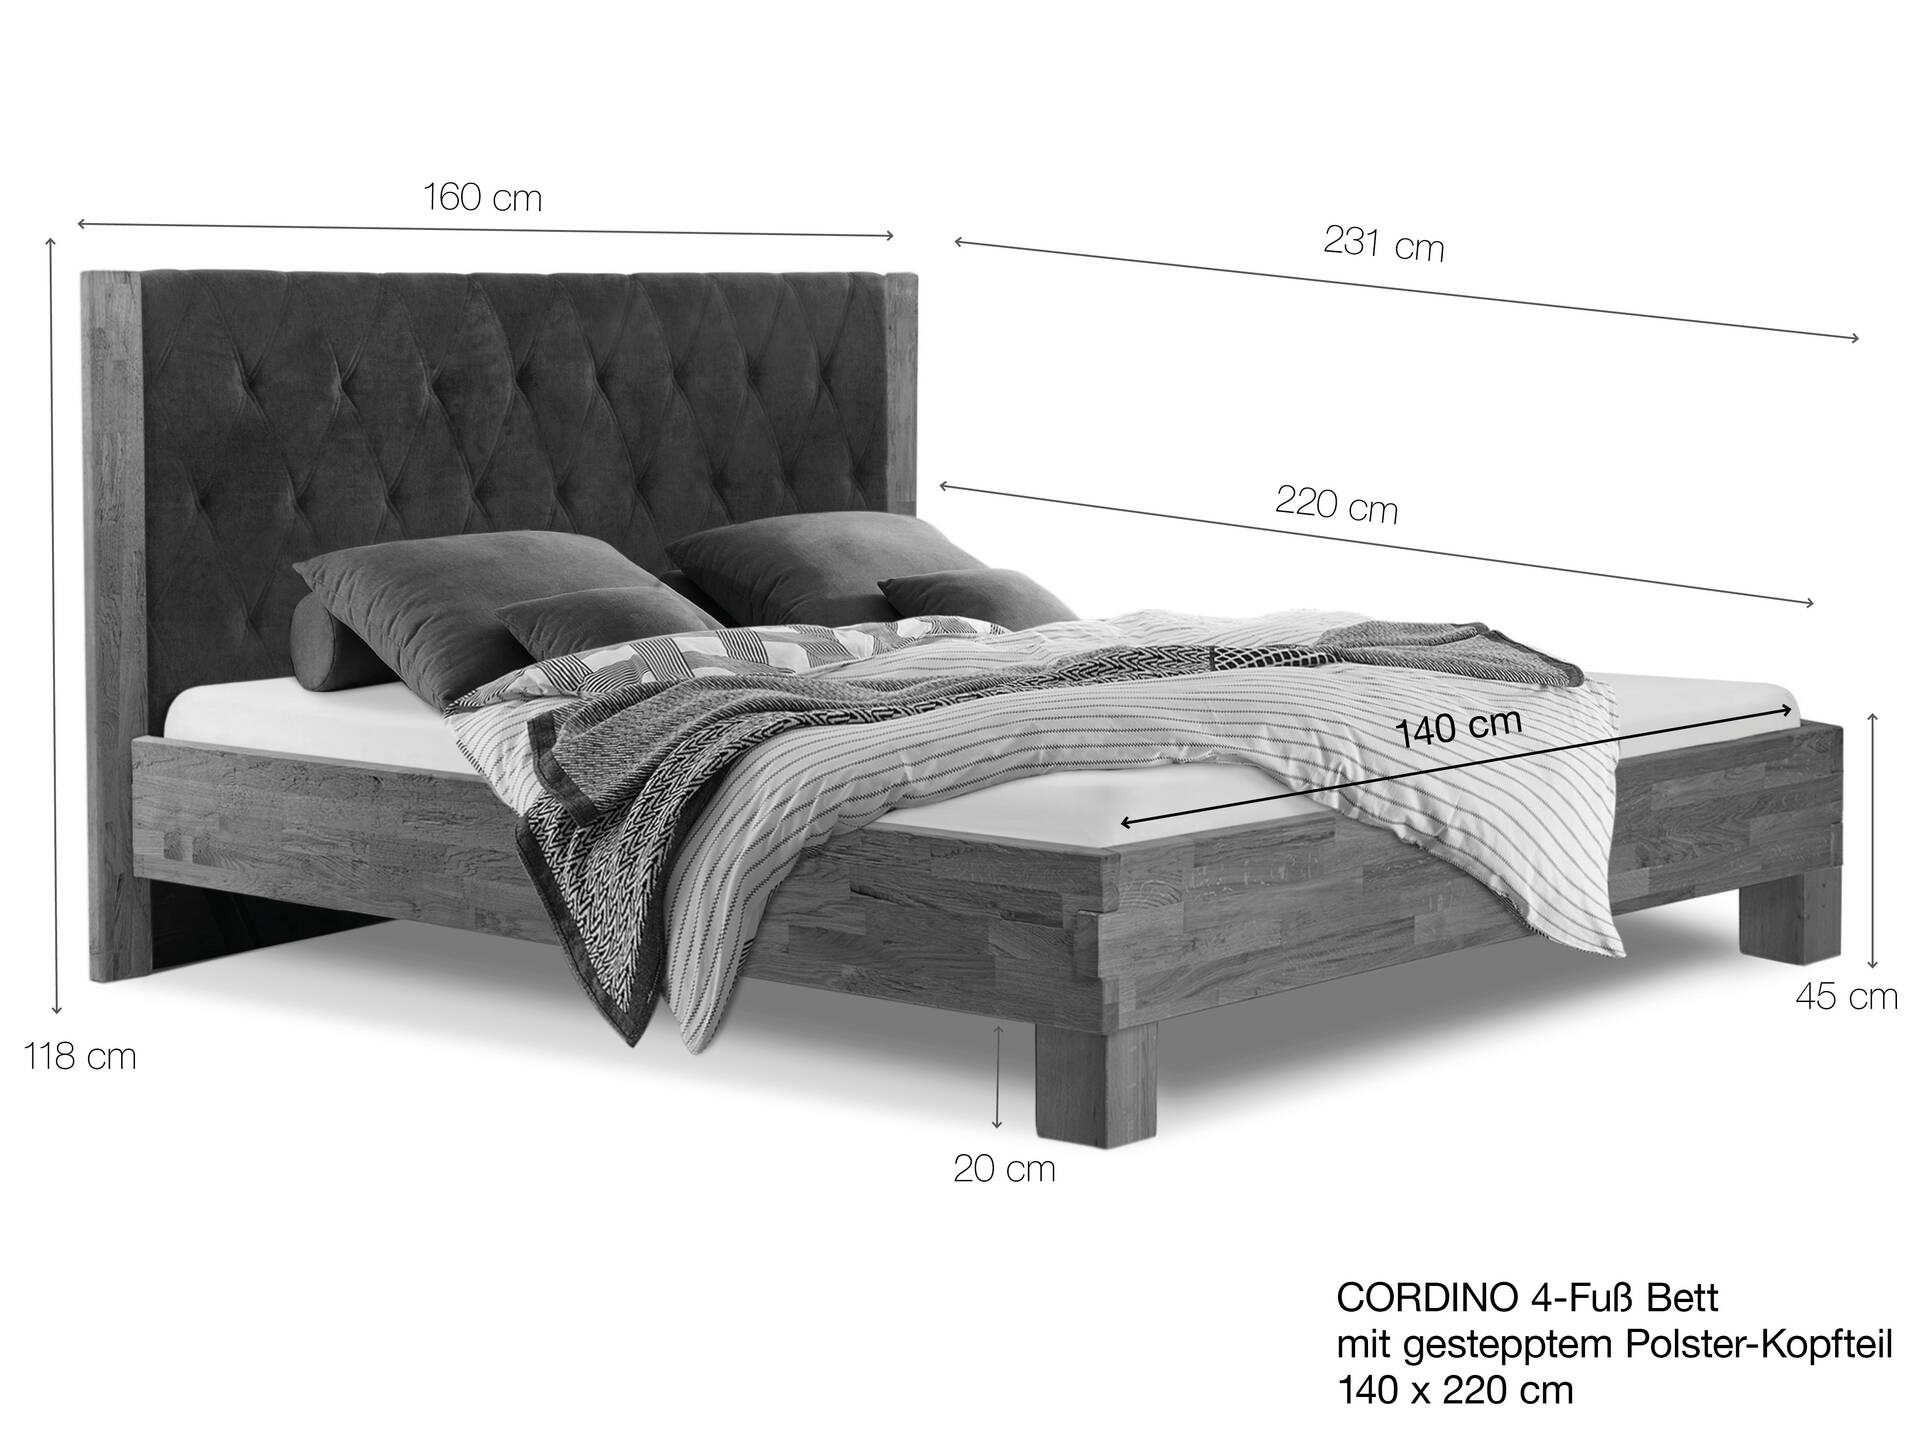 CORDINO 4-Fuß-Bett aus Eiche mit gestepptem Polster-Kopfteil, Material Massivholz 140 x 220 cm | Eiche unbehandelt | Kunstleder Braun | gebürstet